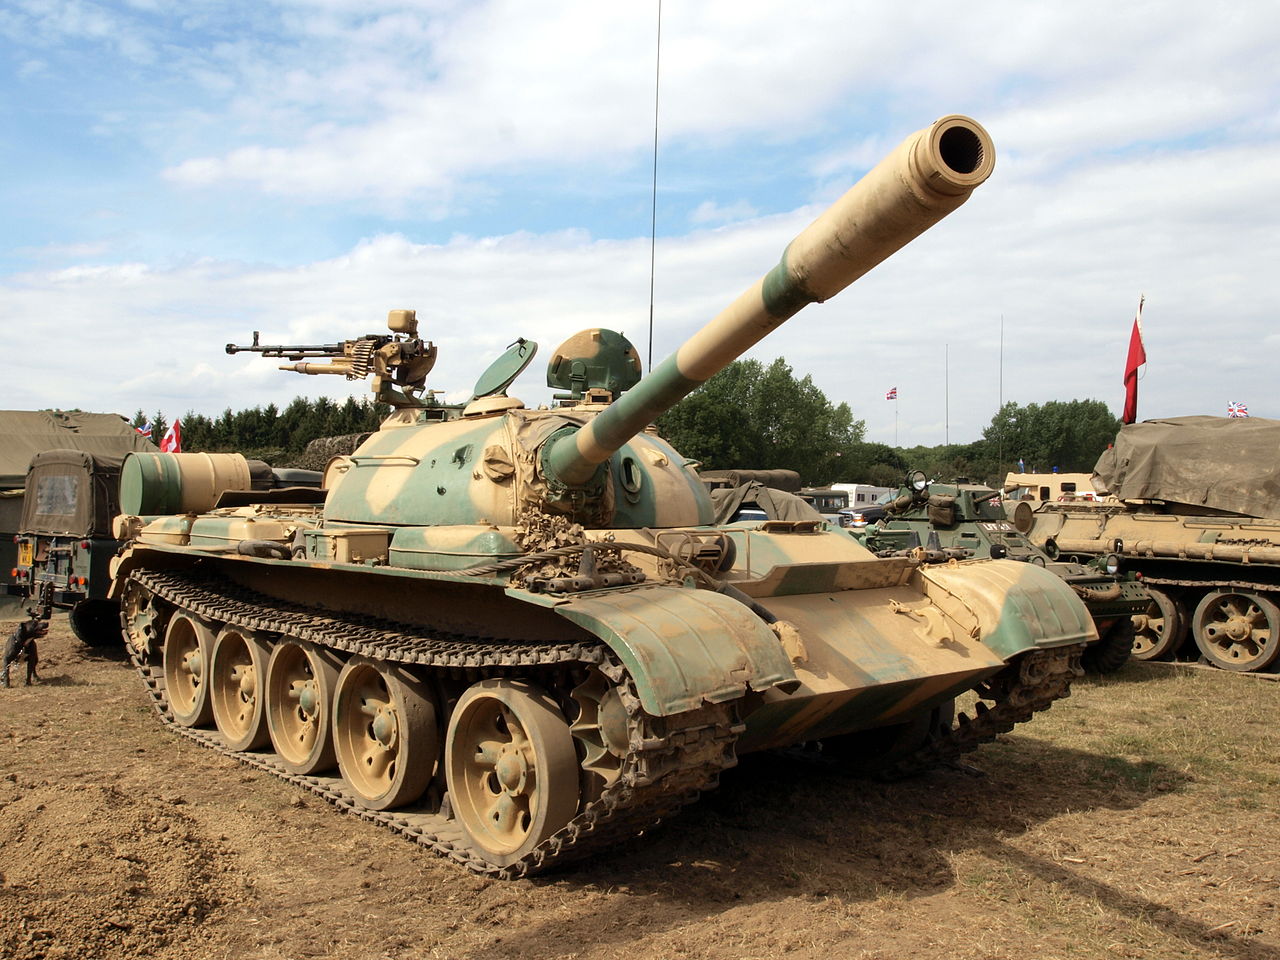 T-59 MBT (Photo Credit: Alf van Beem / Wikipedia / Public Domain)